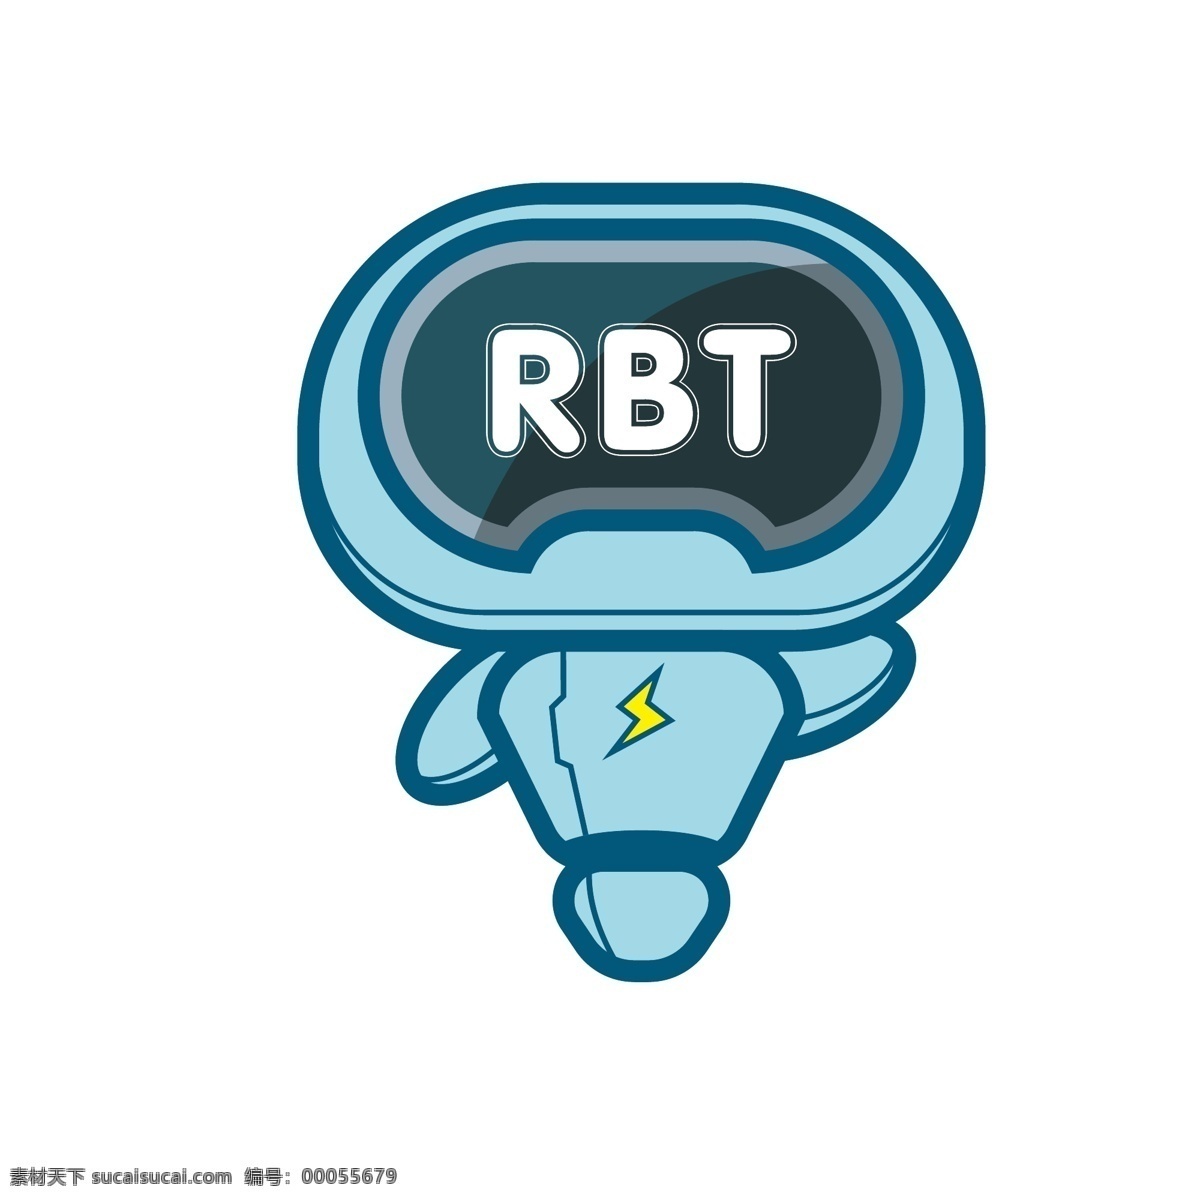 rbt机器人 机器人 插画 可爱 英文 矢量 图案设计 闪电 形象